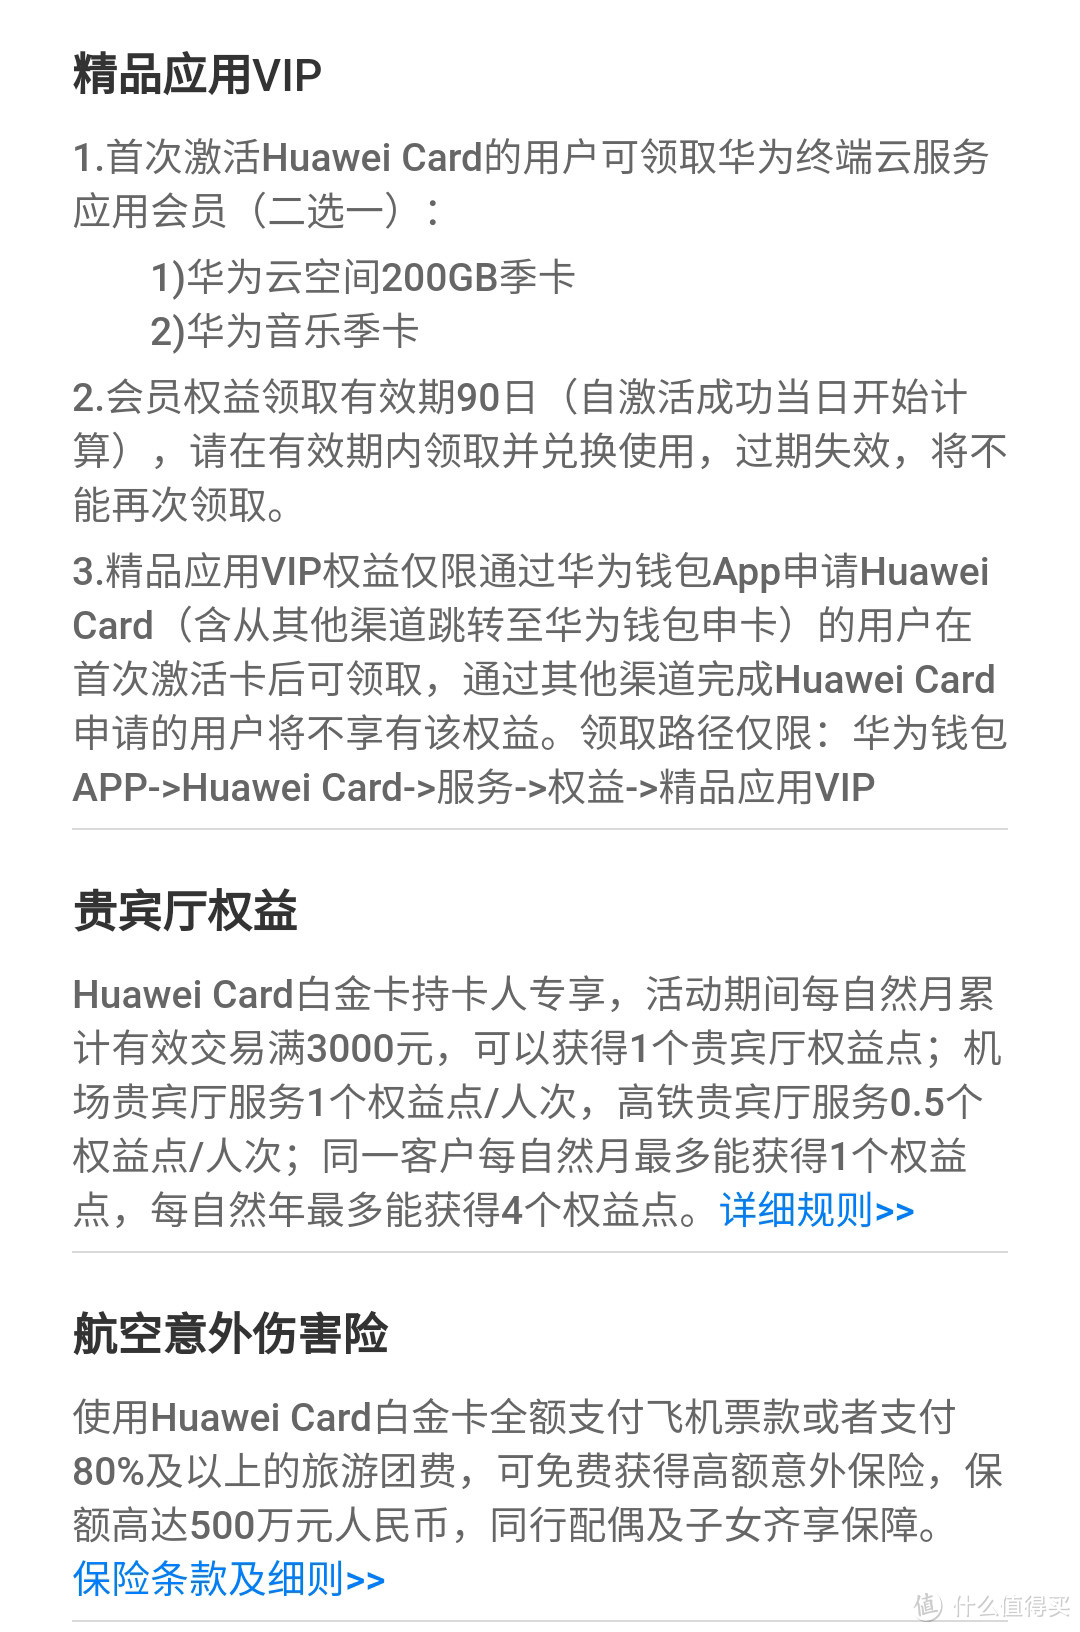 笔笔返现，花粉专属信用卡—Huawei Card来啦！ 